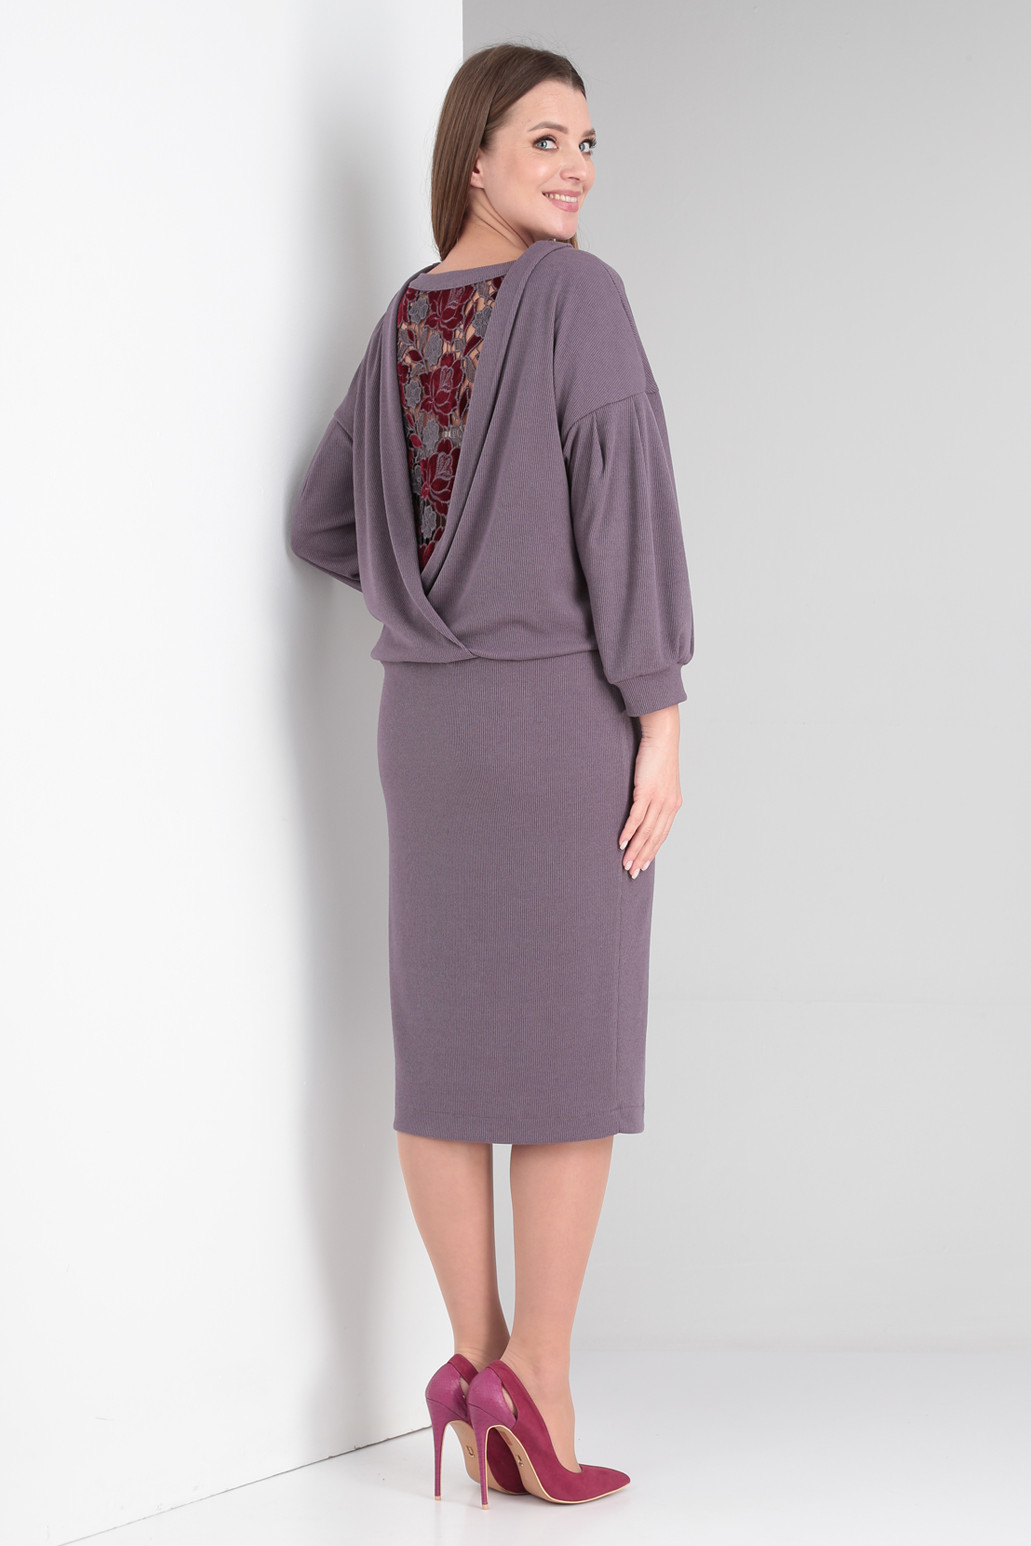 Платье Viola Style 1000 серо-фиолетовый